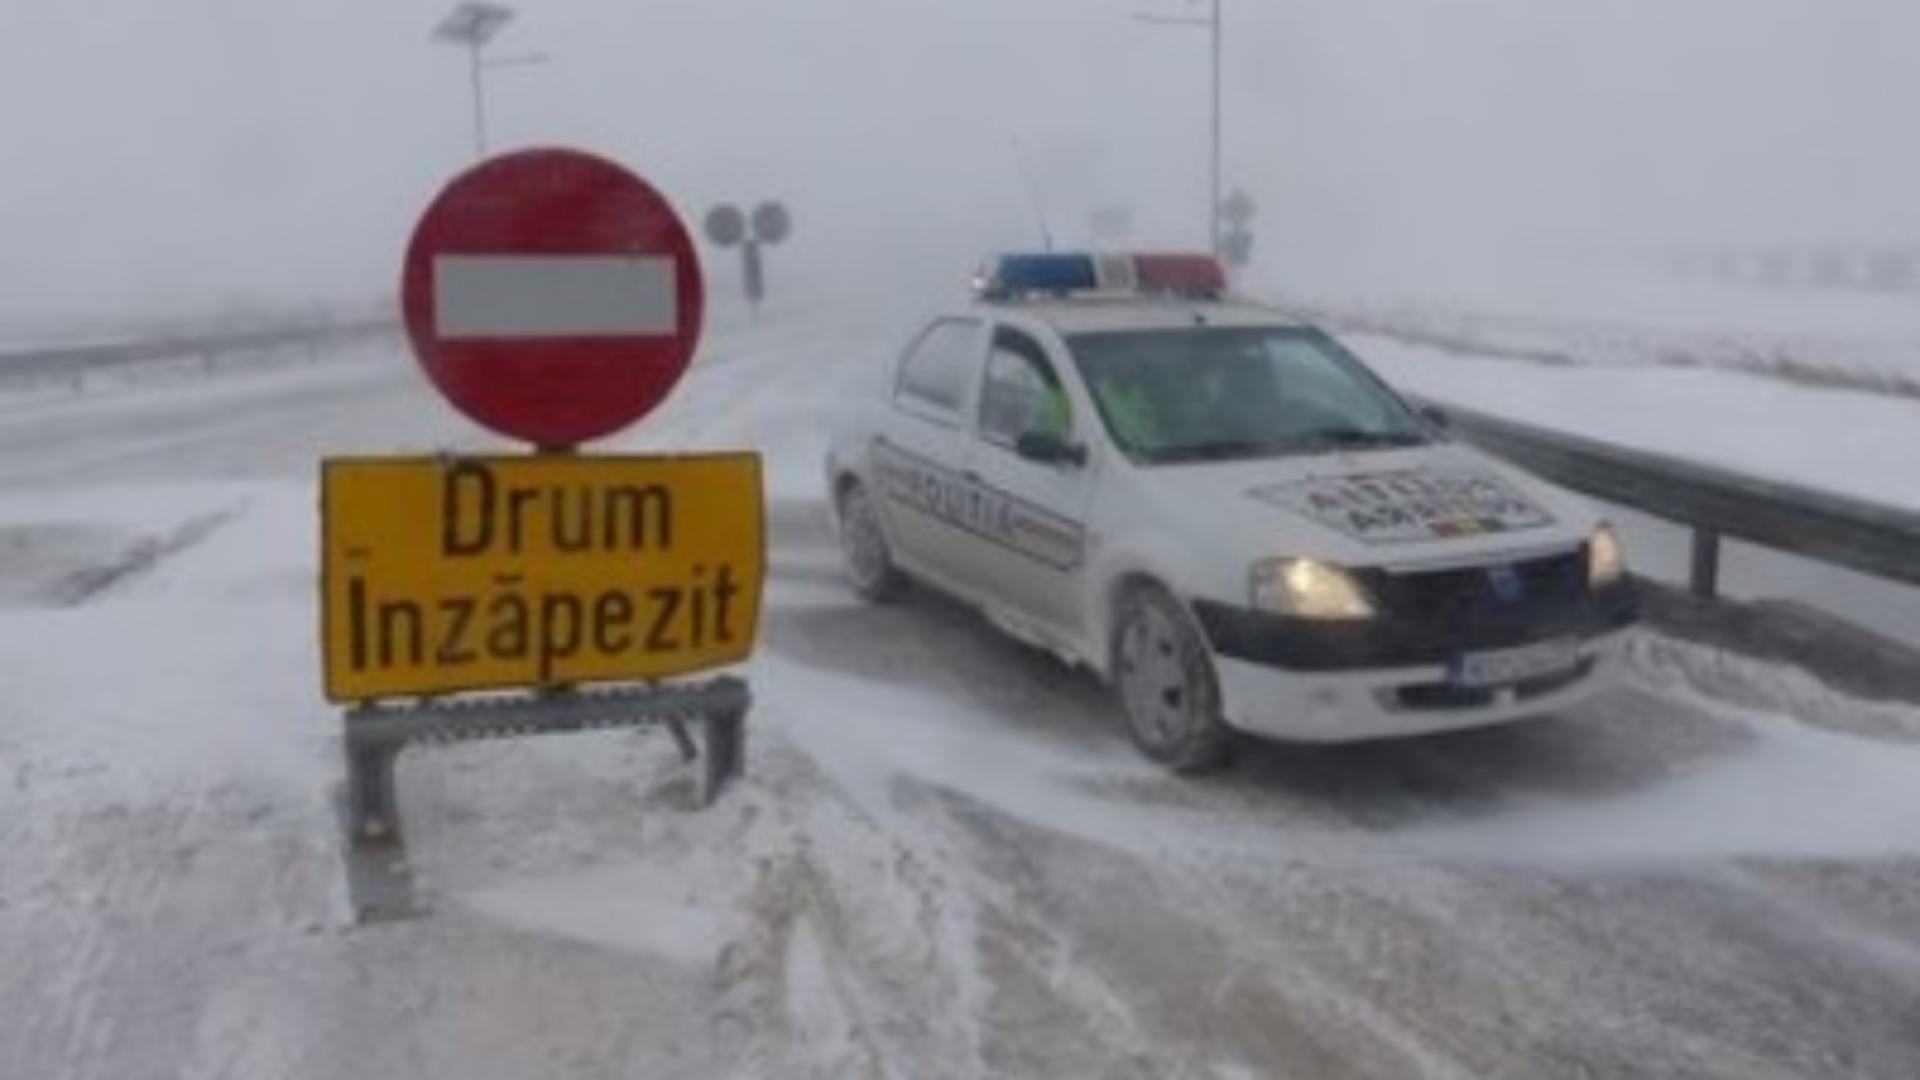 Ciclonul care a făcut ravagii în Europa a ajuns și în România. Foto/Inquam